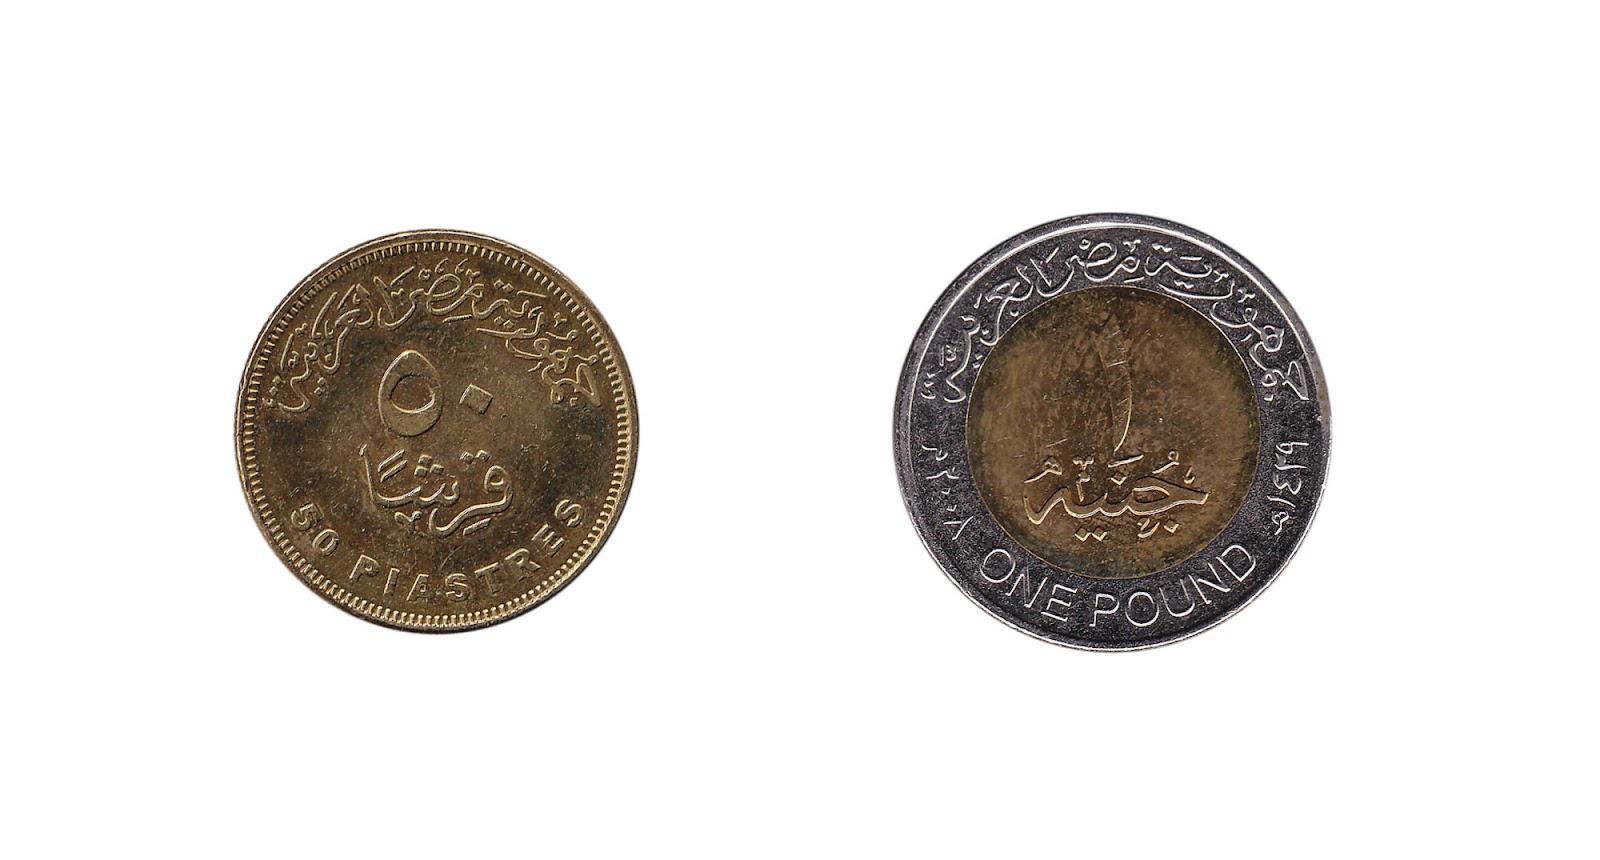 Egyptian pound coins